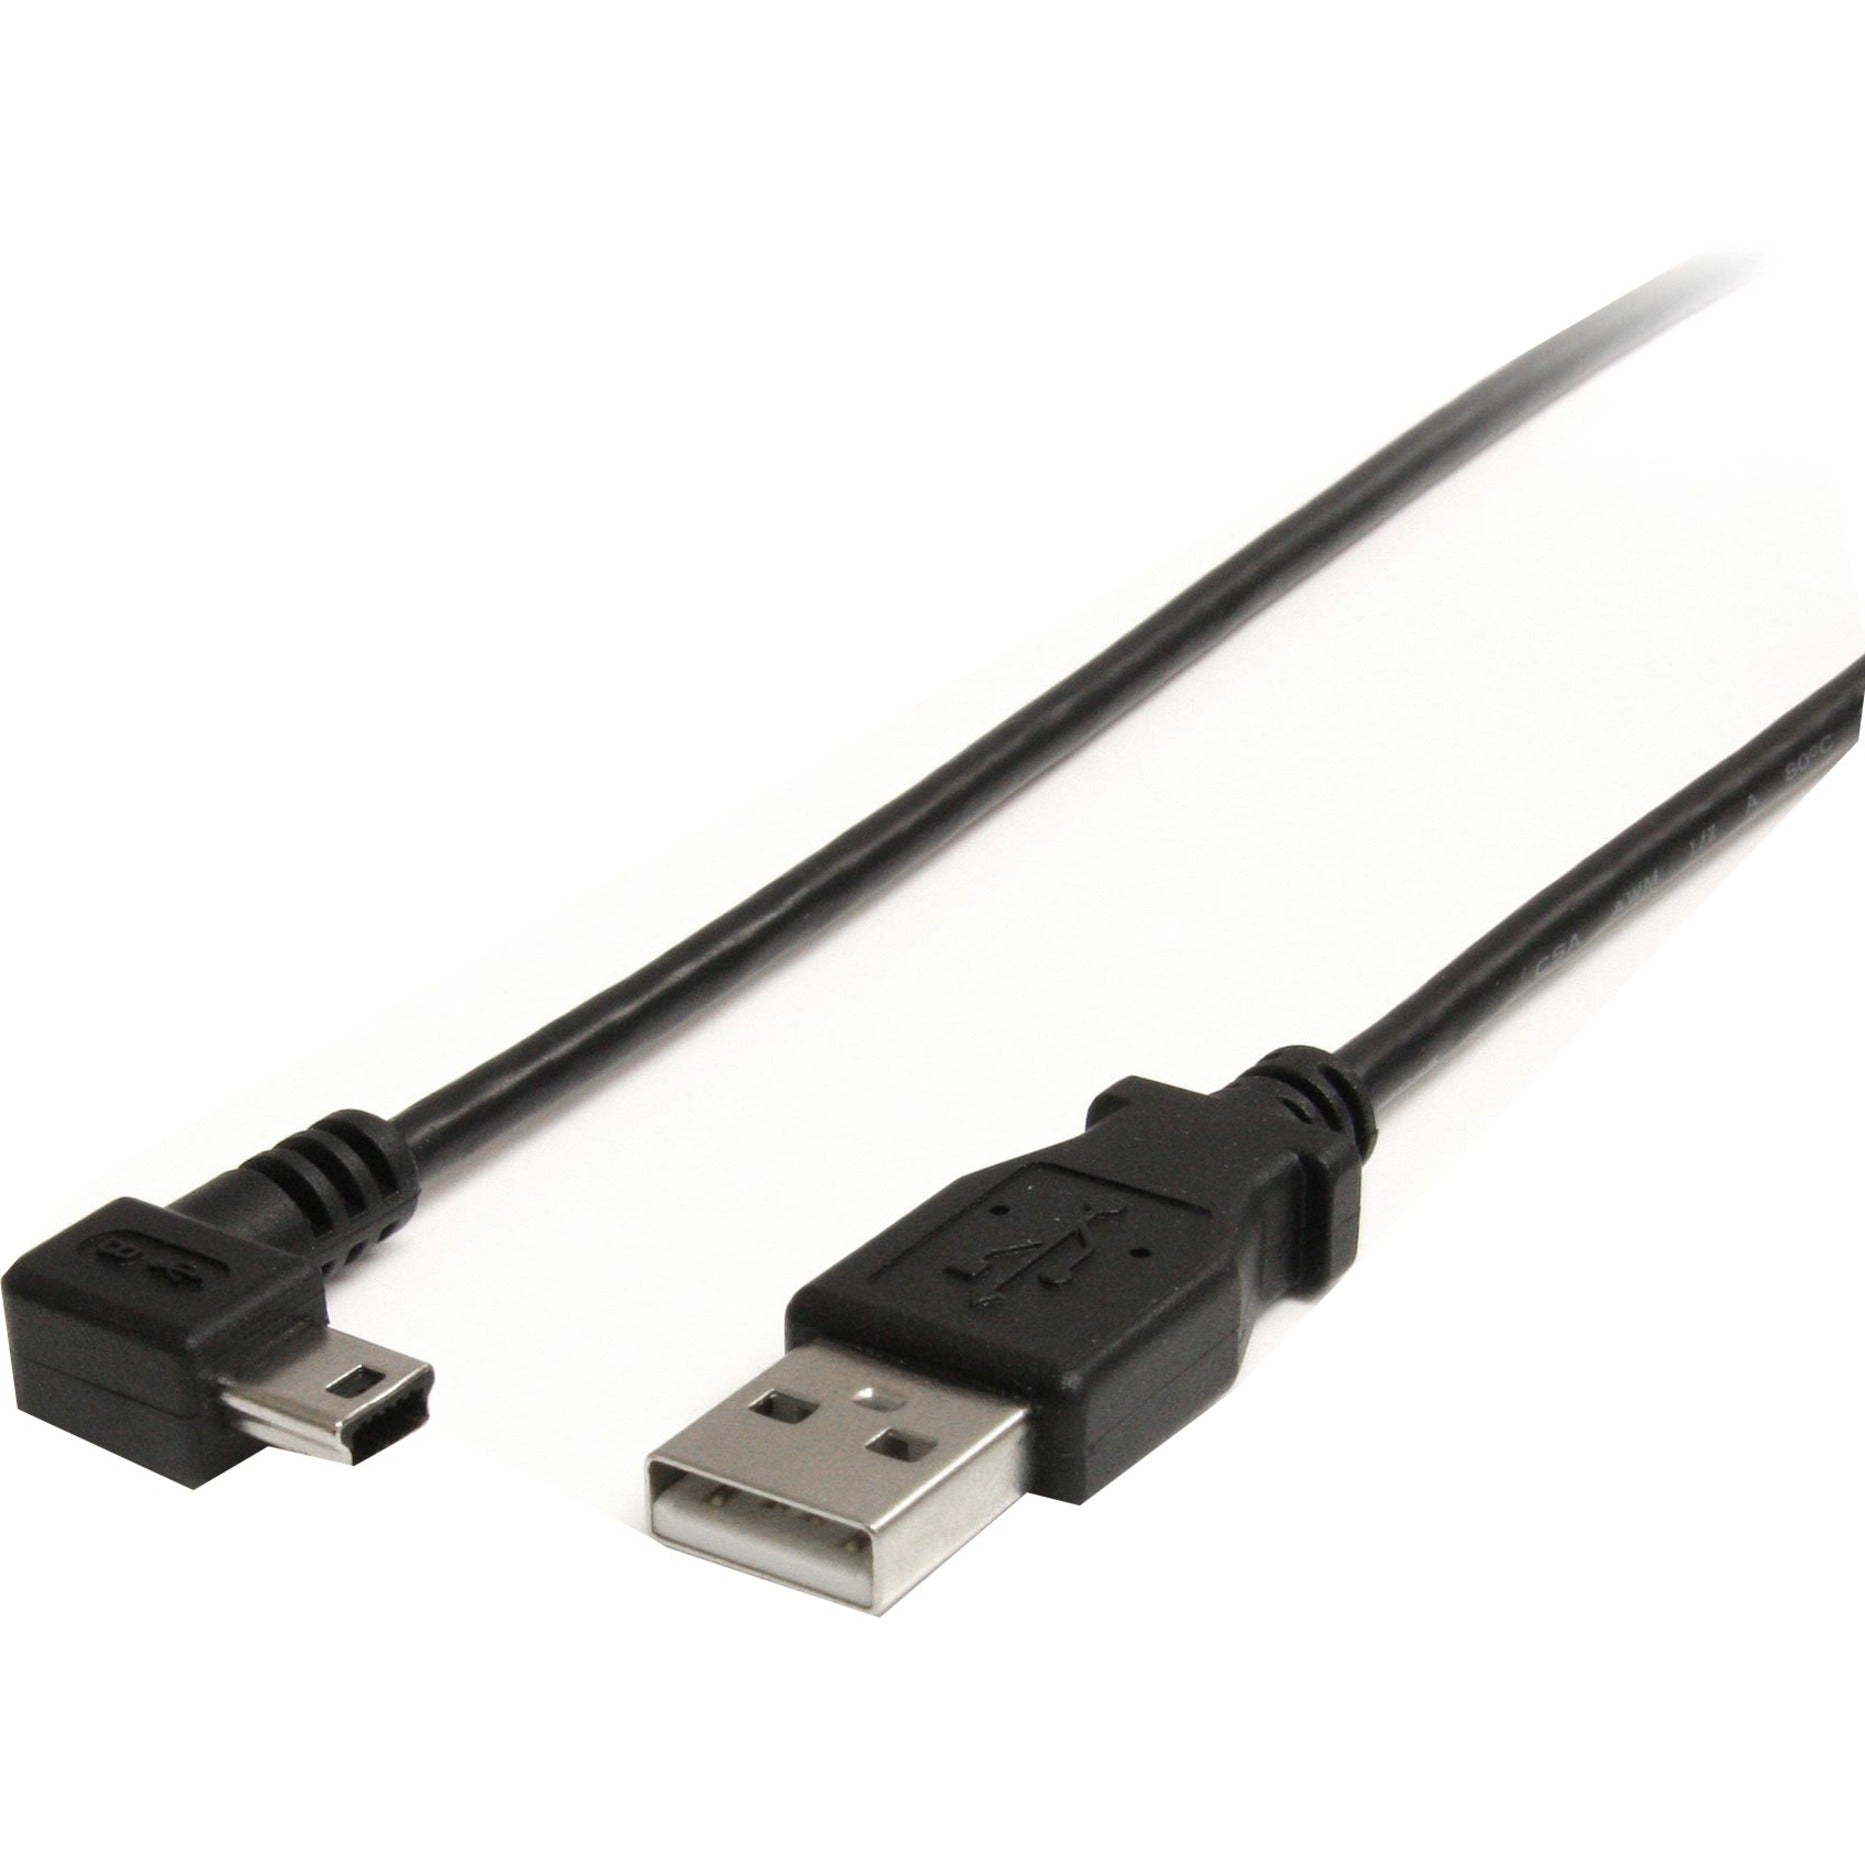 كبل USB2HABM6RA 6 قدم مصنوع من اليو اس بي - من النوع A إلى زاوية صغيرة من النوع B، الشحن، يمتلك معدل نقل بيانات 480 ميجابت في الثانية StarTech.com